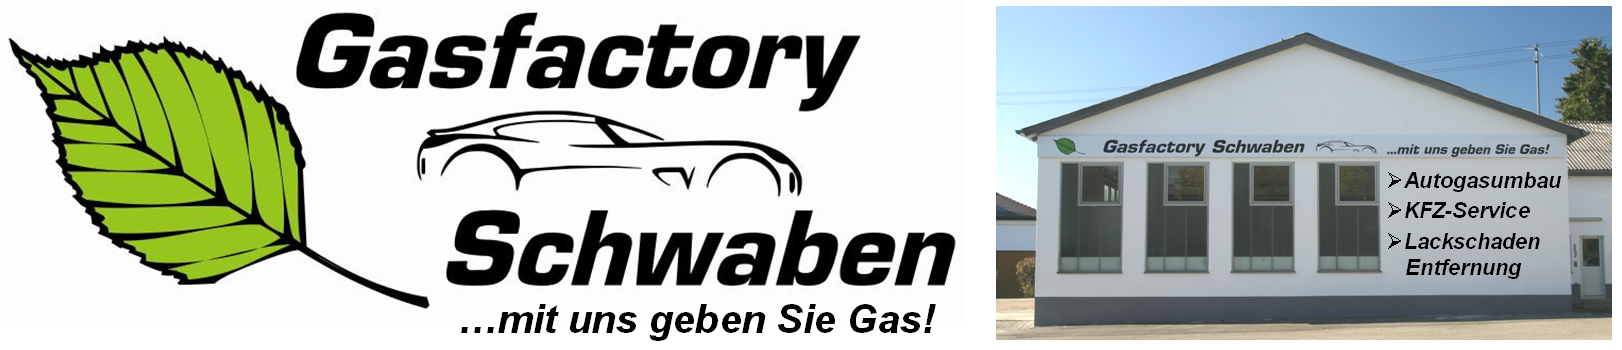 http://www.gasfactory-schwaben.de/